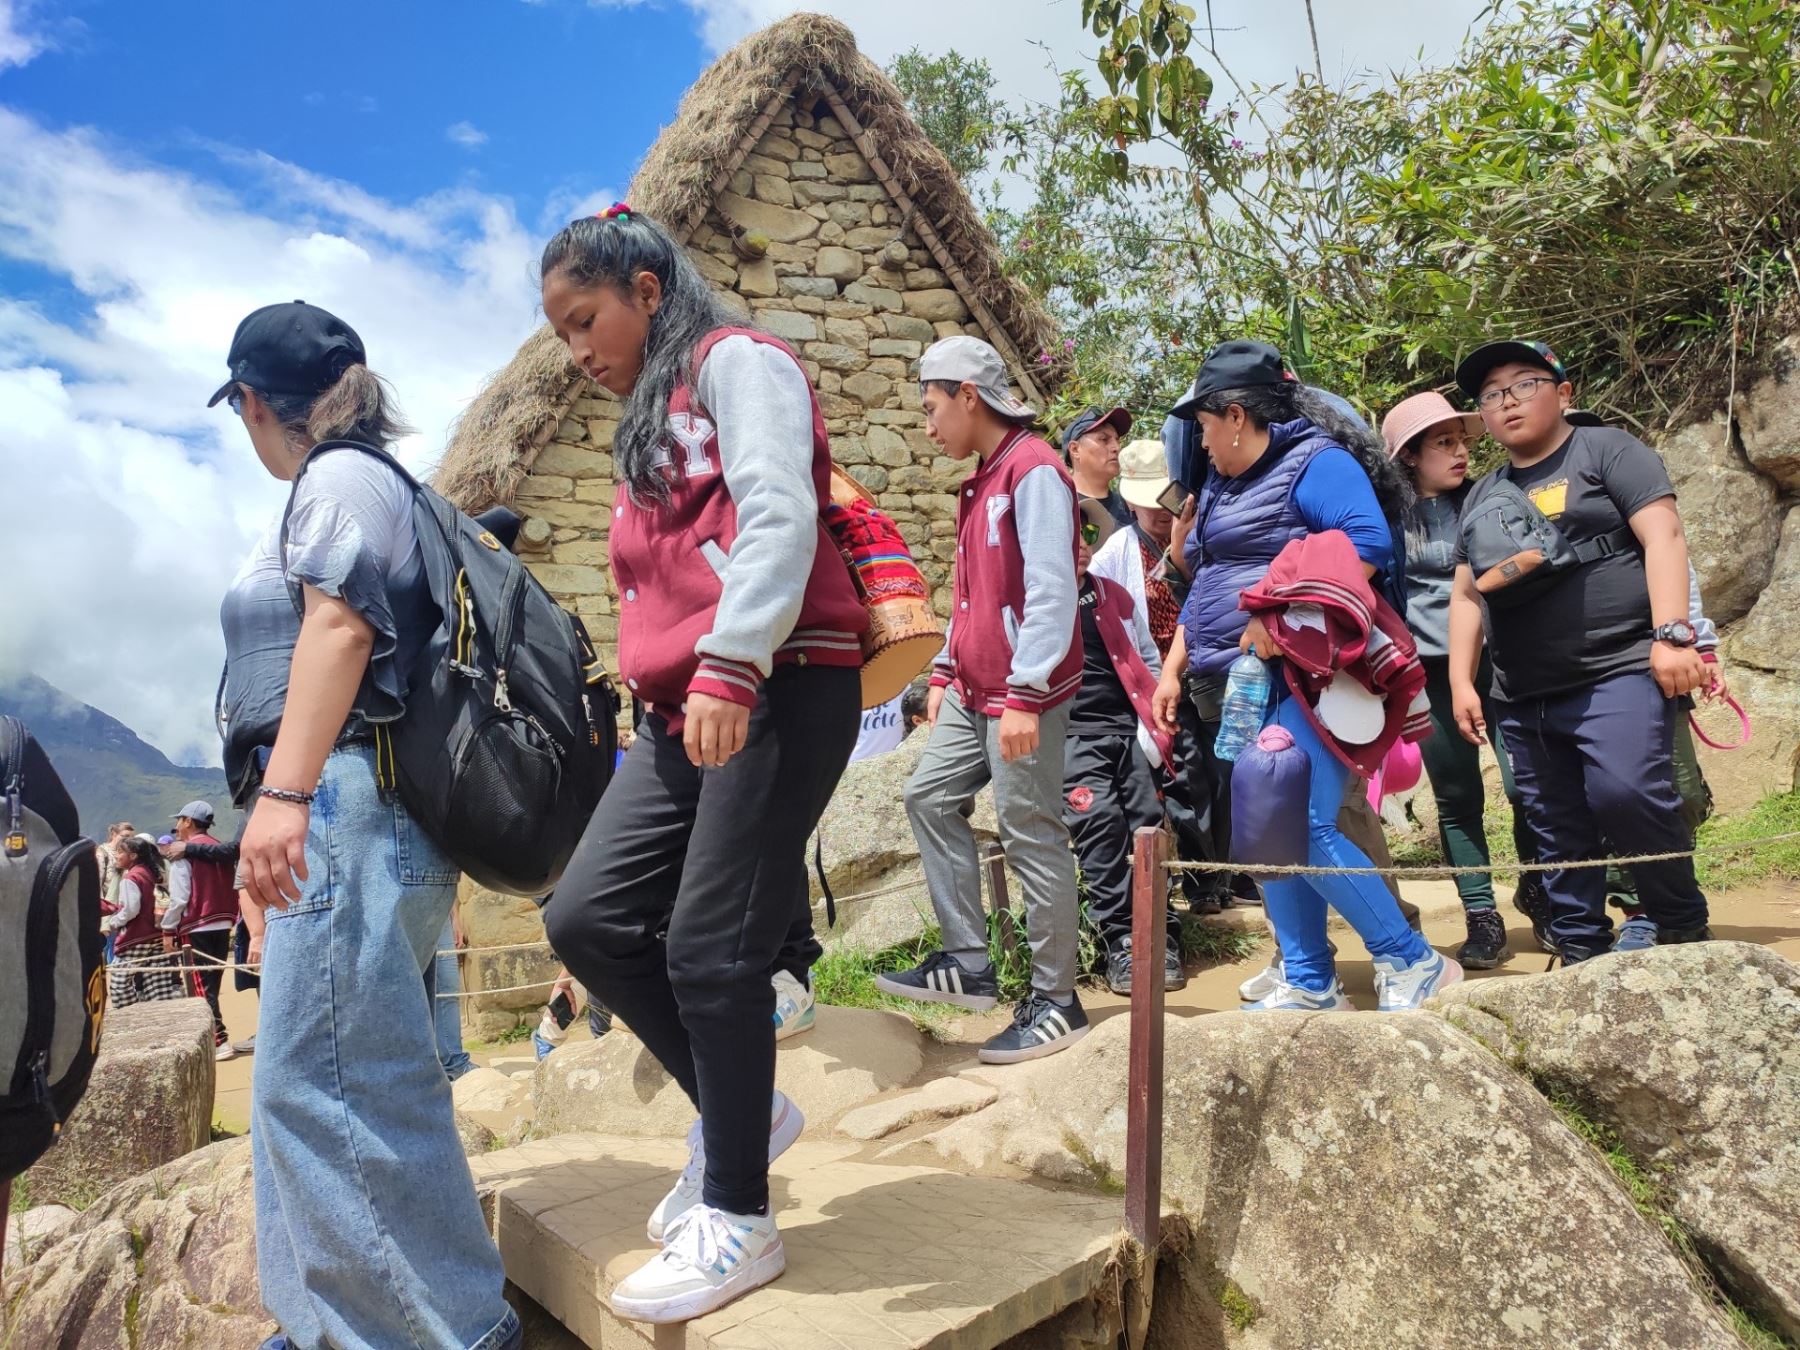 Más de 4,600 escolares en situación de pobreza extrema pudieron visitar gratis Machu Picchu, nuestro ícono turístico y una de las siete nuevas maravillas del mundo. ANDINA/Percy Hurtado Santillán